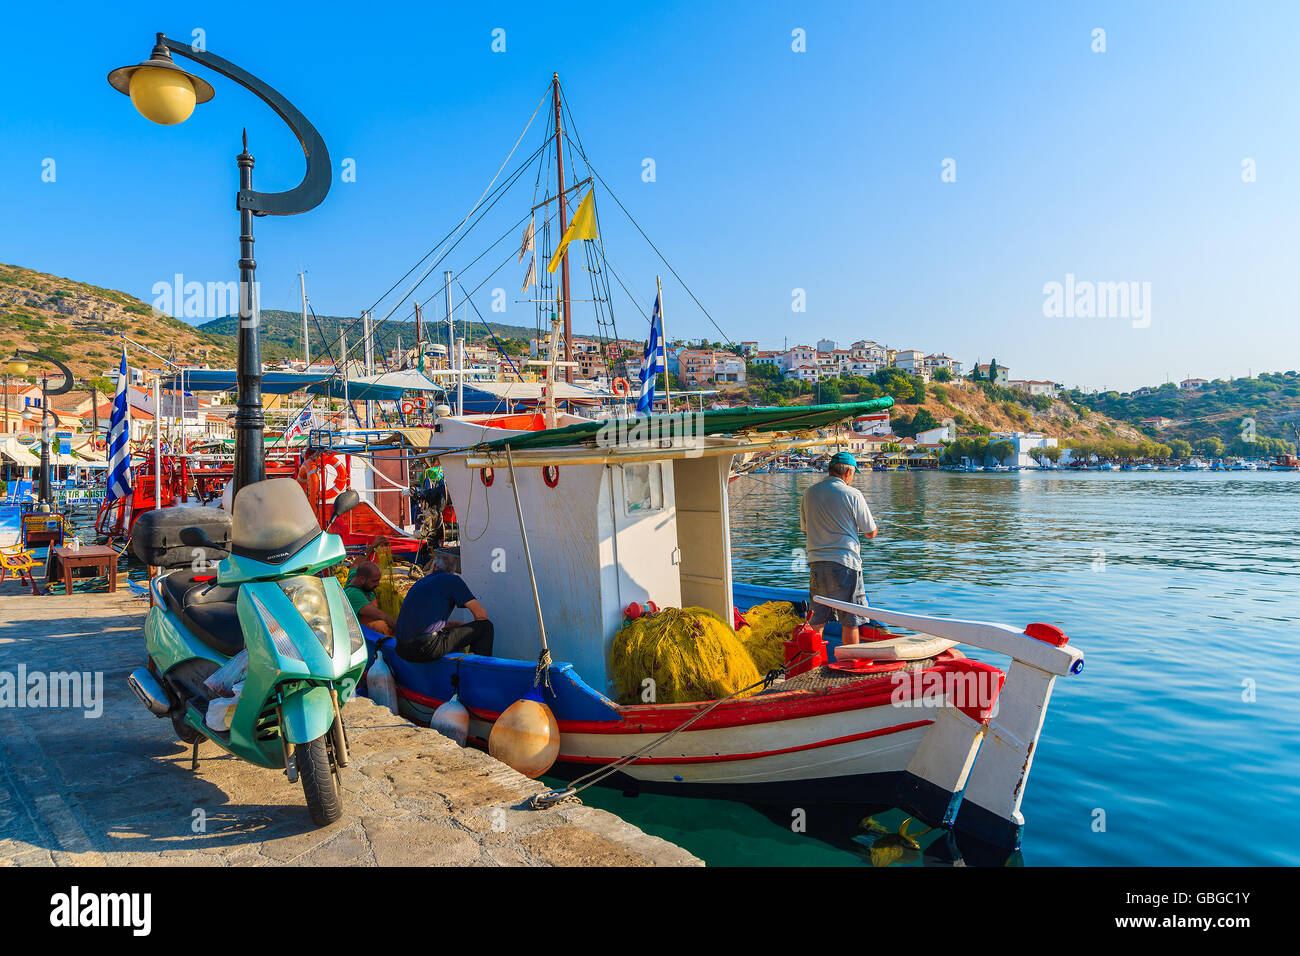 PYTHAGORION PORT, l'île de Samos - Sep 19, 2015 : pêcheur debout sur un bateau dans la belle ville de Pythagorion port sur l'île de Samos, grecque Banque D'Images